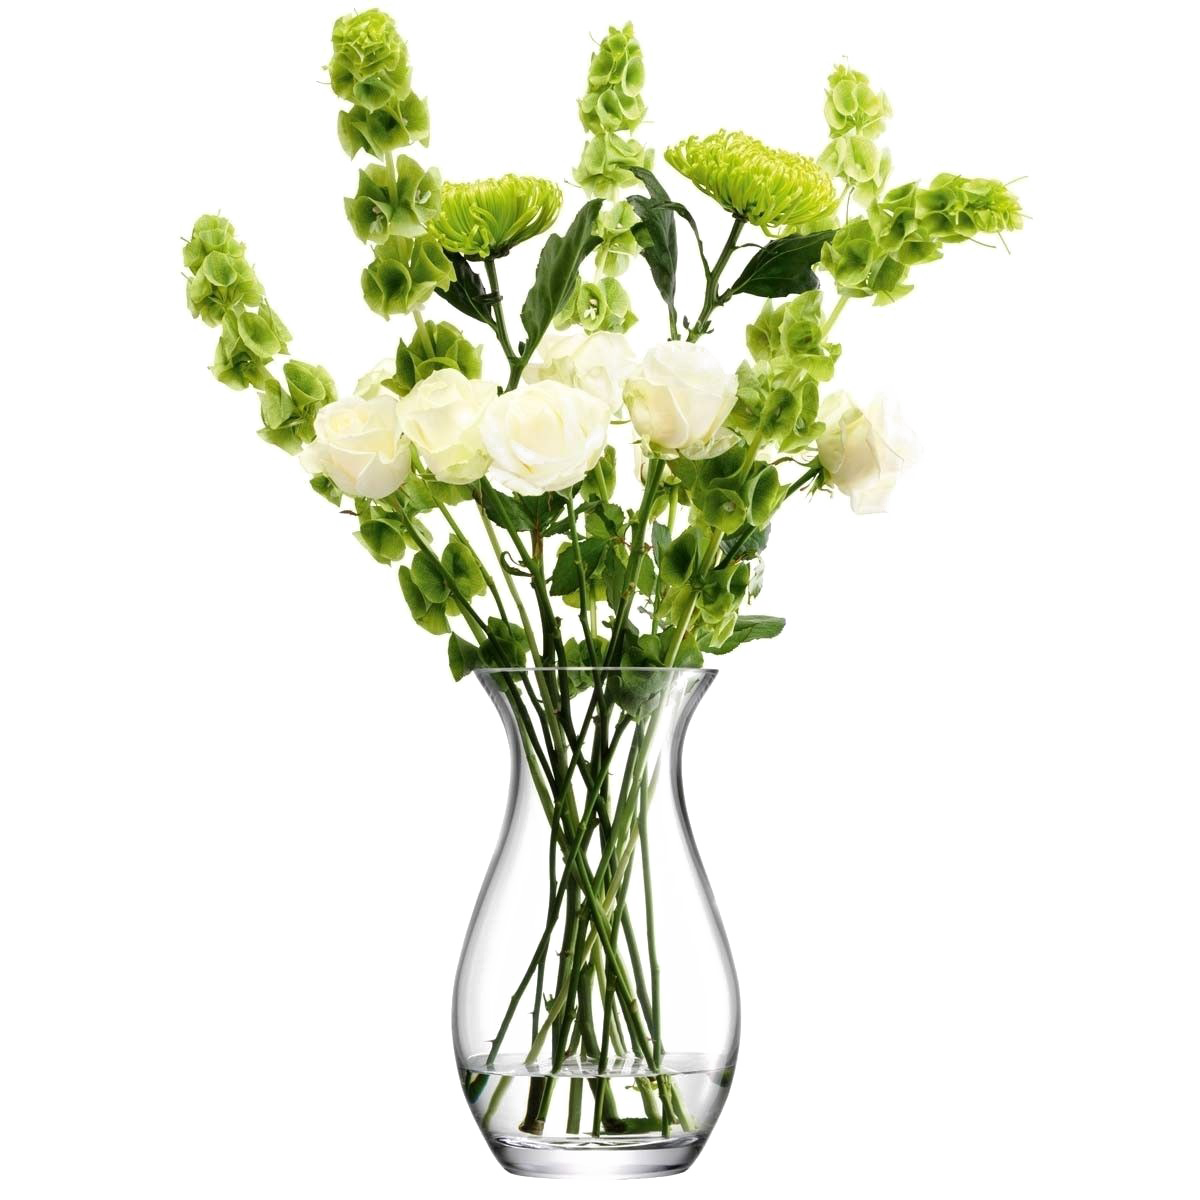 Flower Vase PNG Image Background